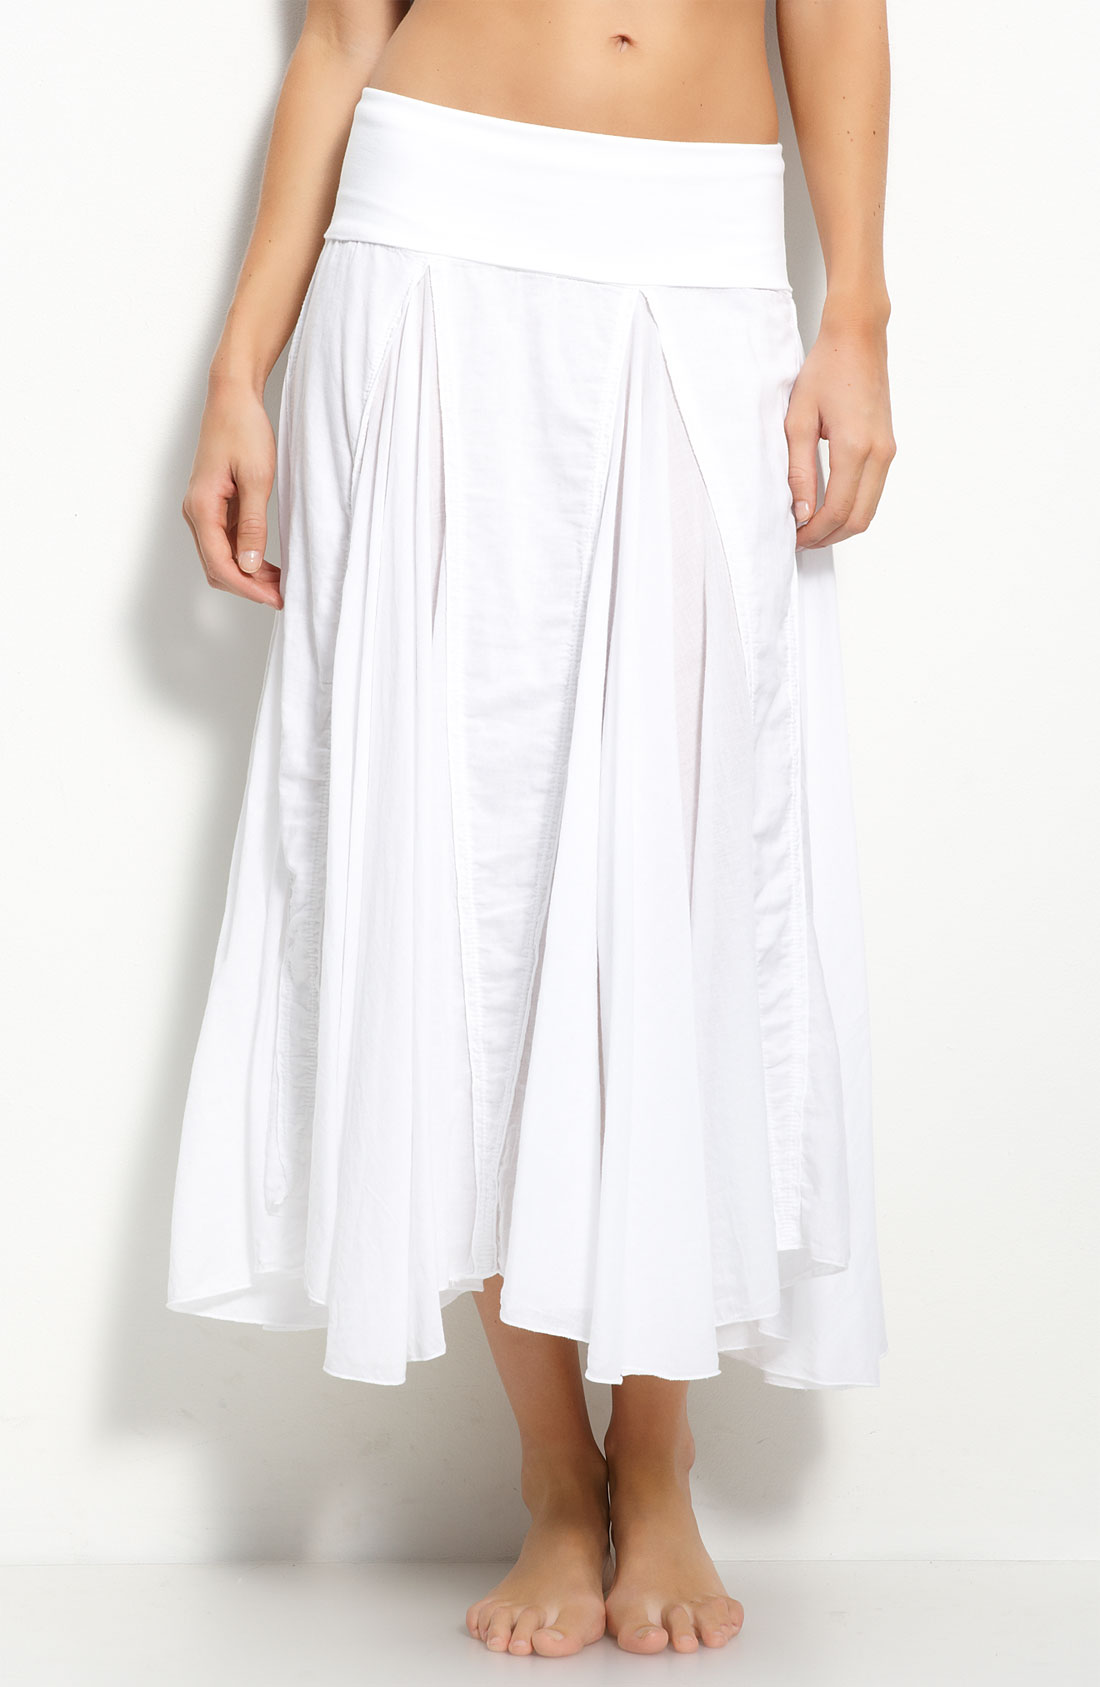 Long White Cotton Skirt 93